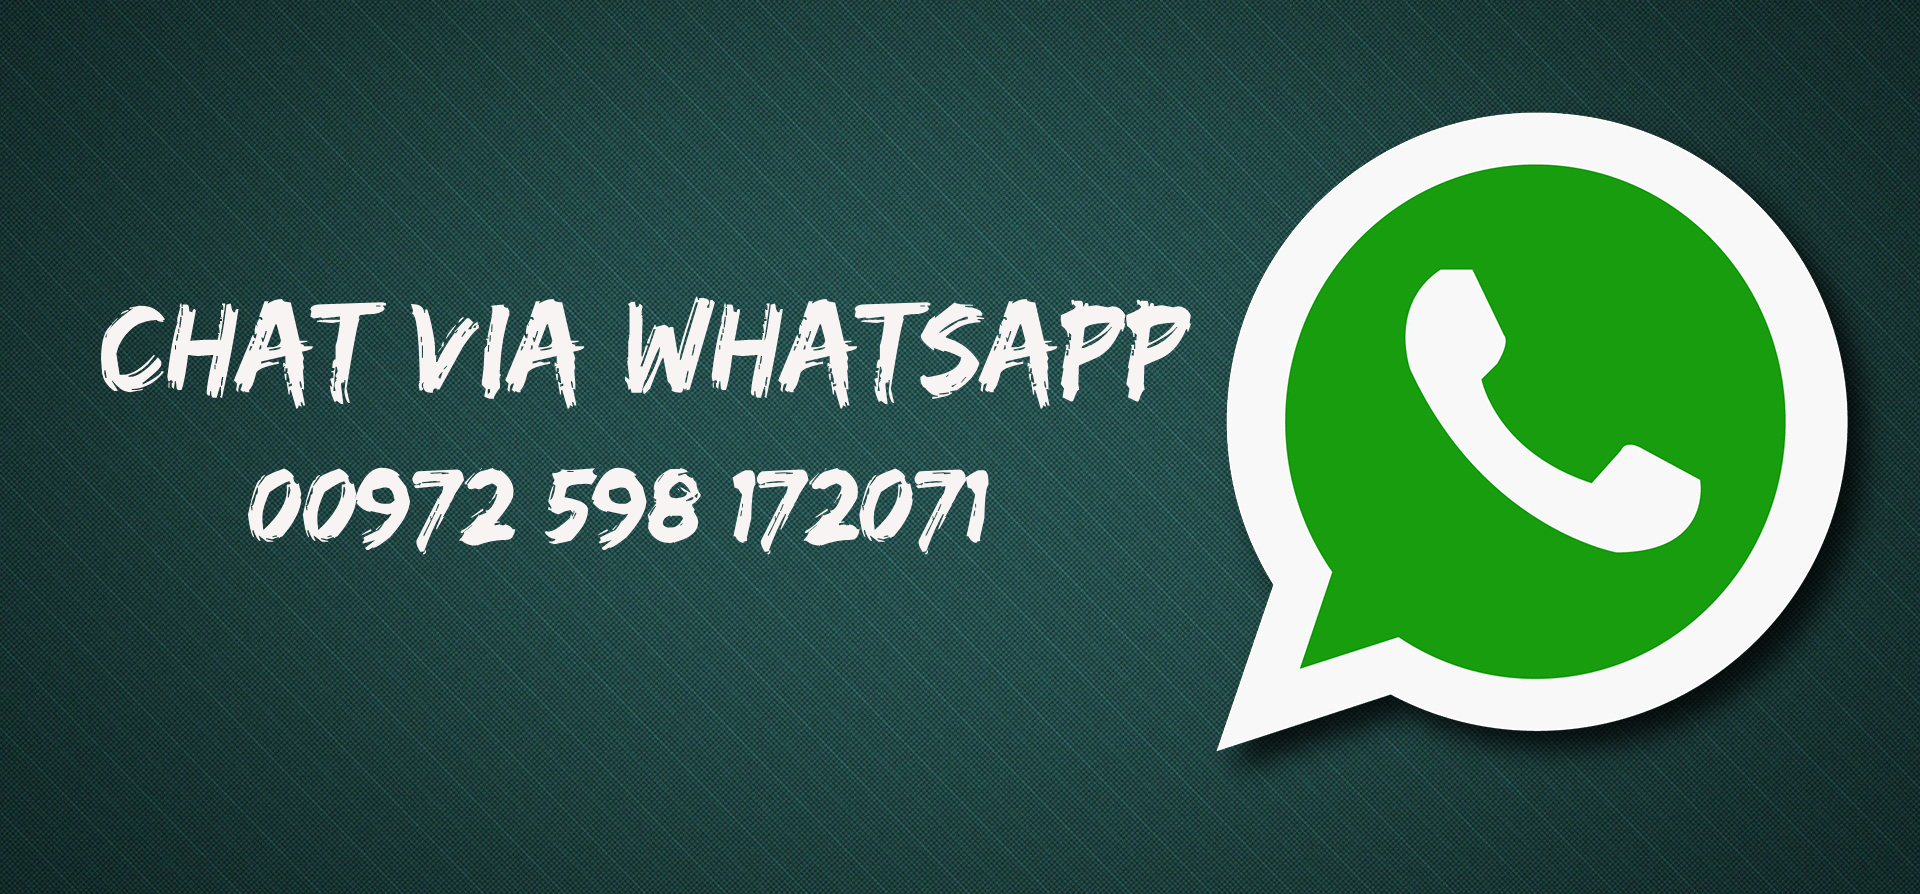 whatsapp messaging app download